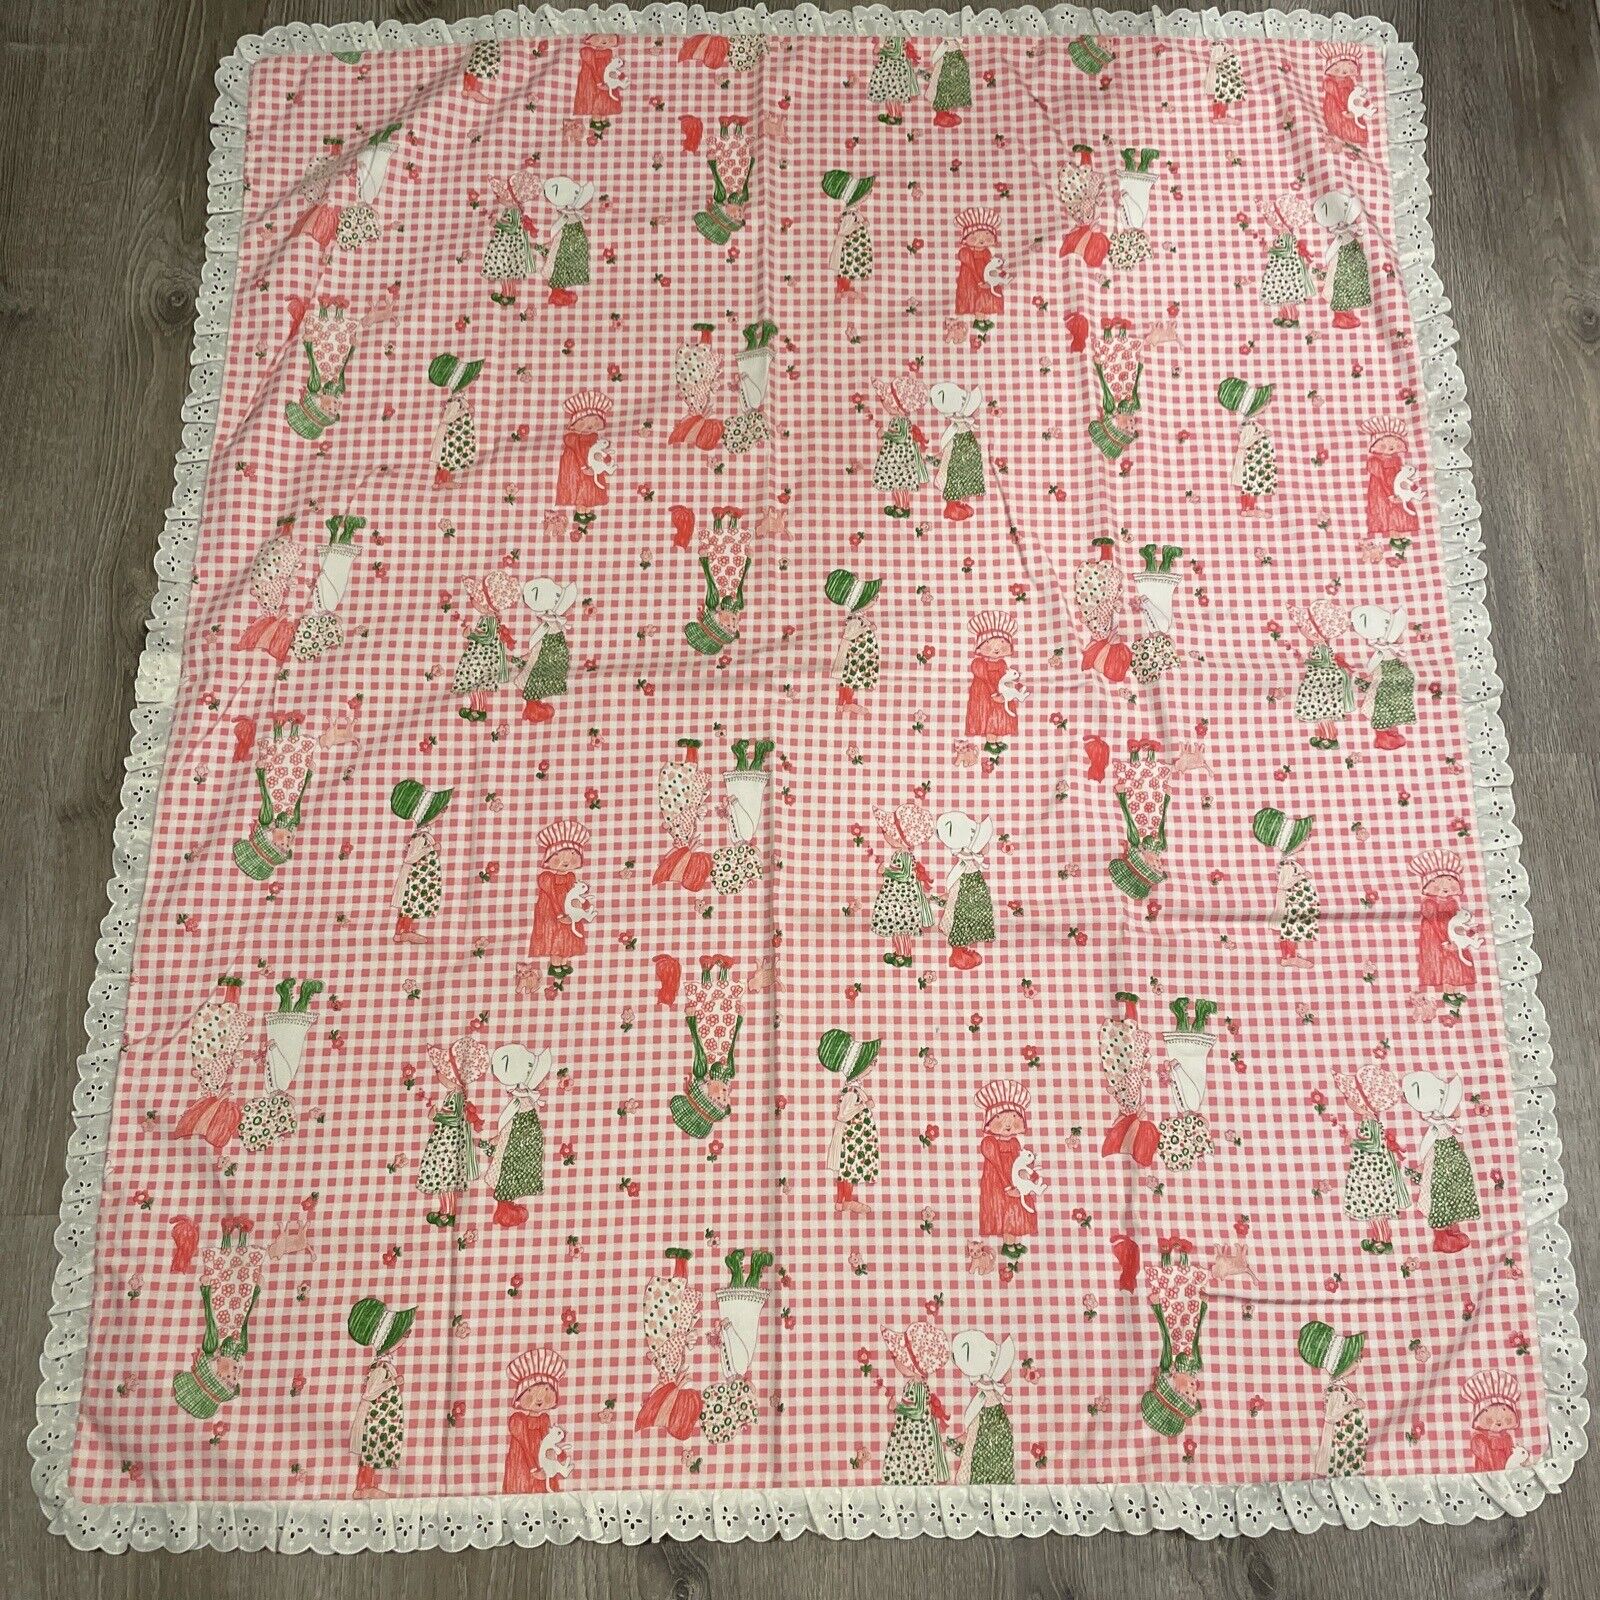 VTG 1970's Handmade HOLLY  HOBBIE Pink Gingham Coverlet Quilt Blanket 46”x 54”